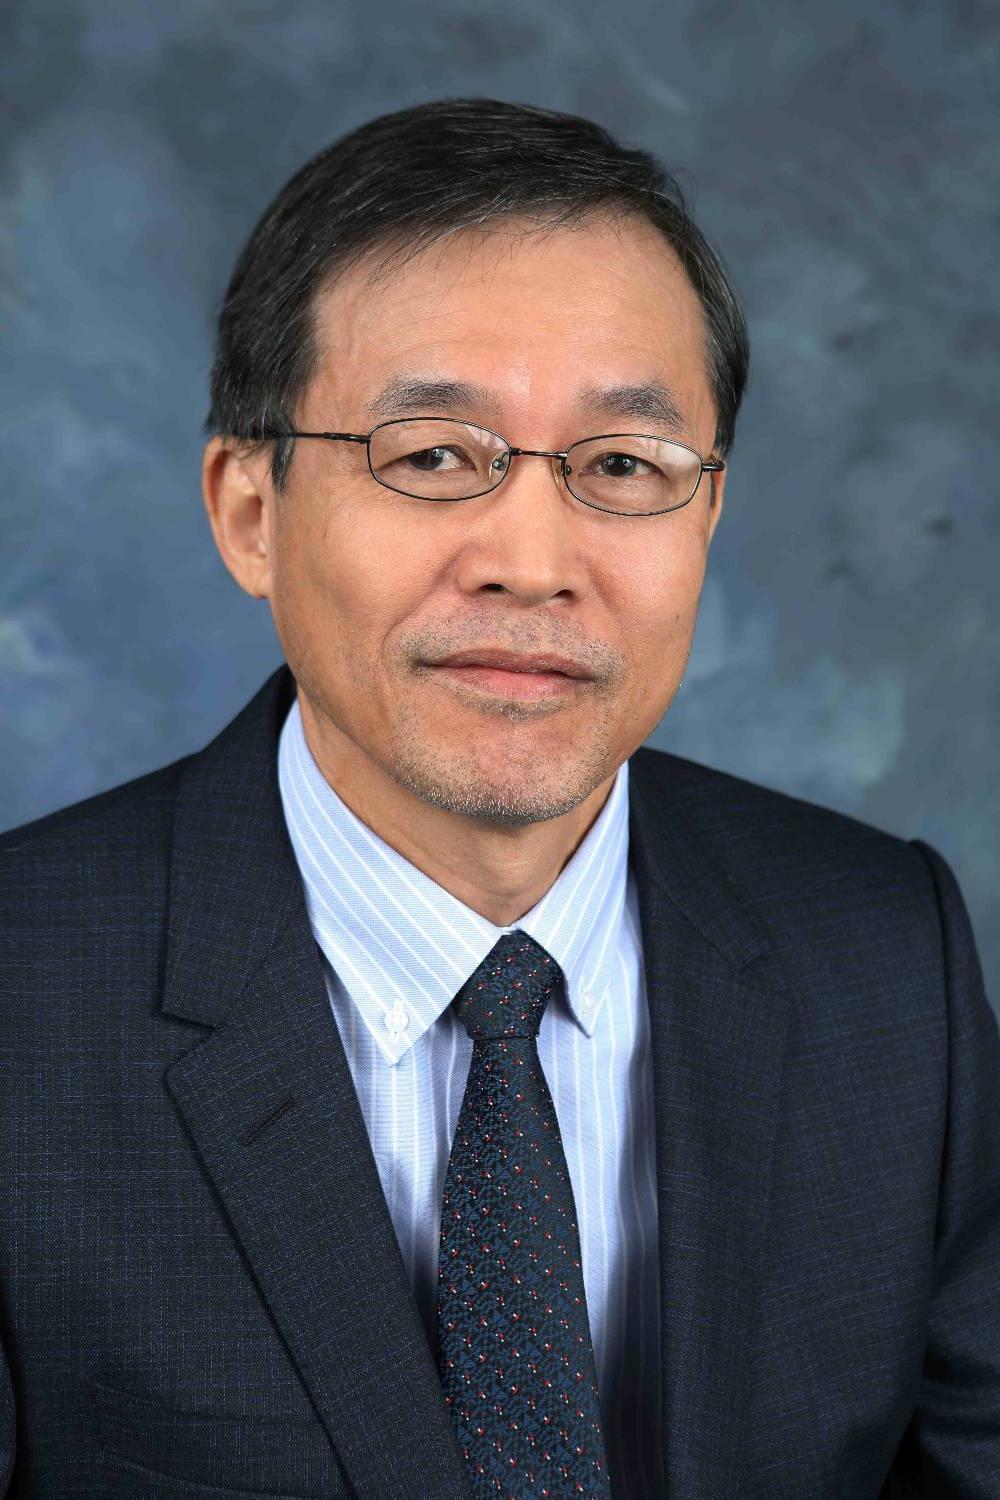 Dr. Phan